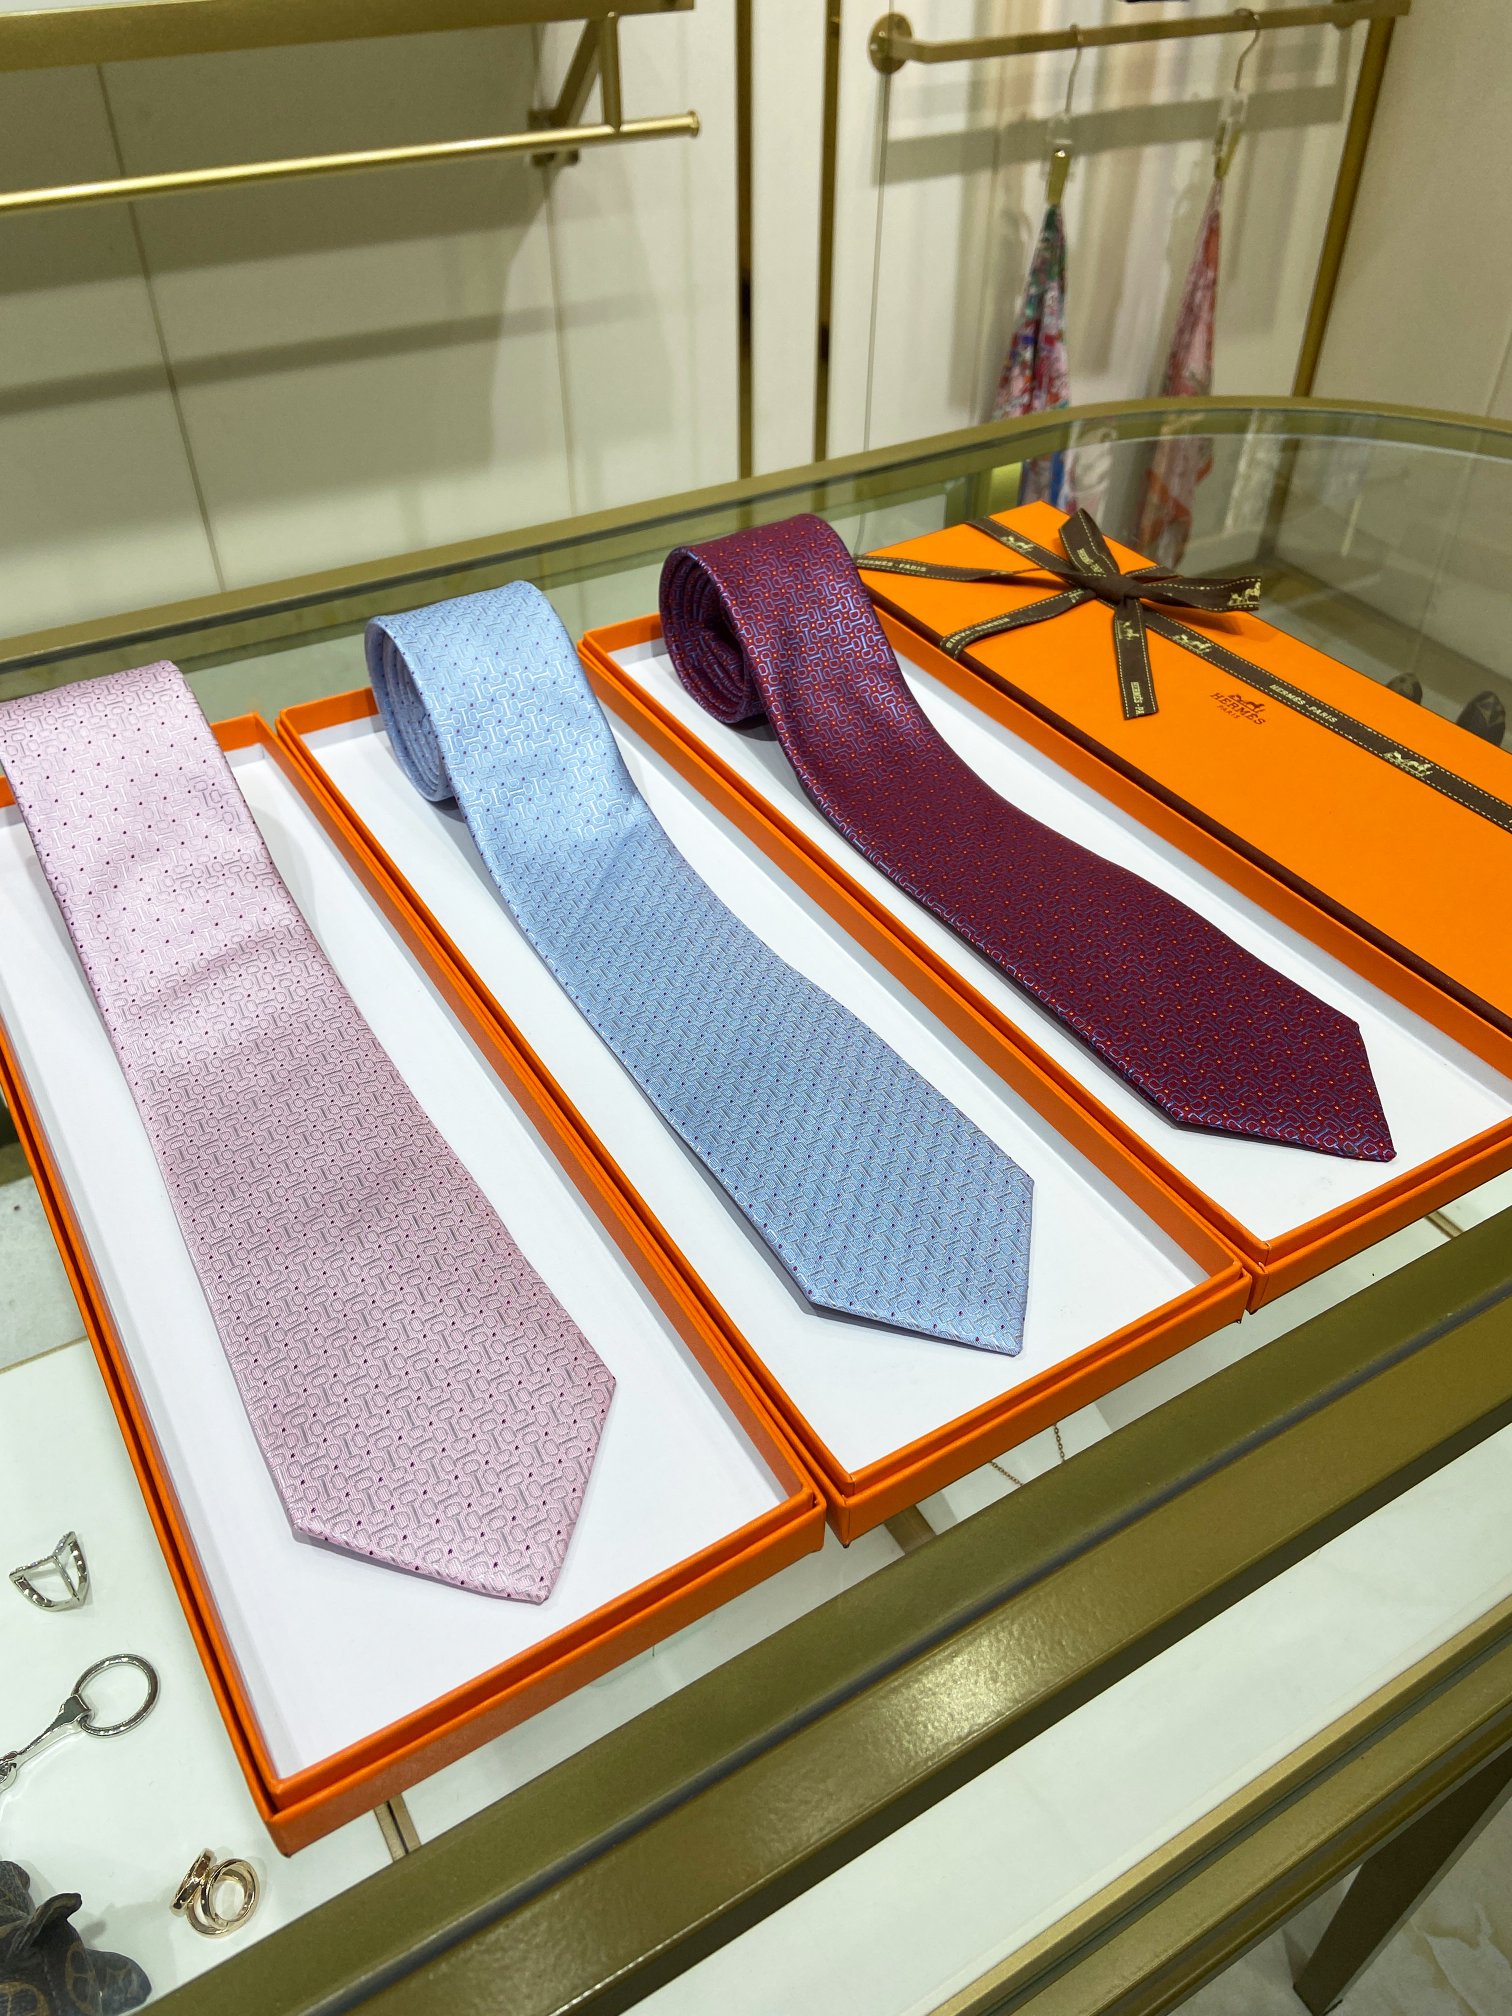 爱马仕男士新款领带系列稀有H家每年都有一千条不同印花的领带面世从最初的多以几何图案表现骑术活动为主到如今